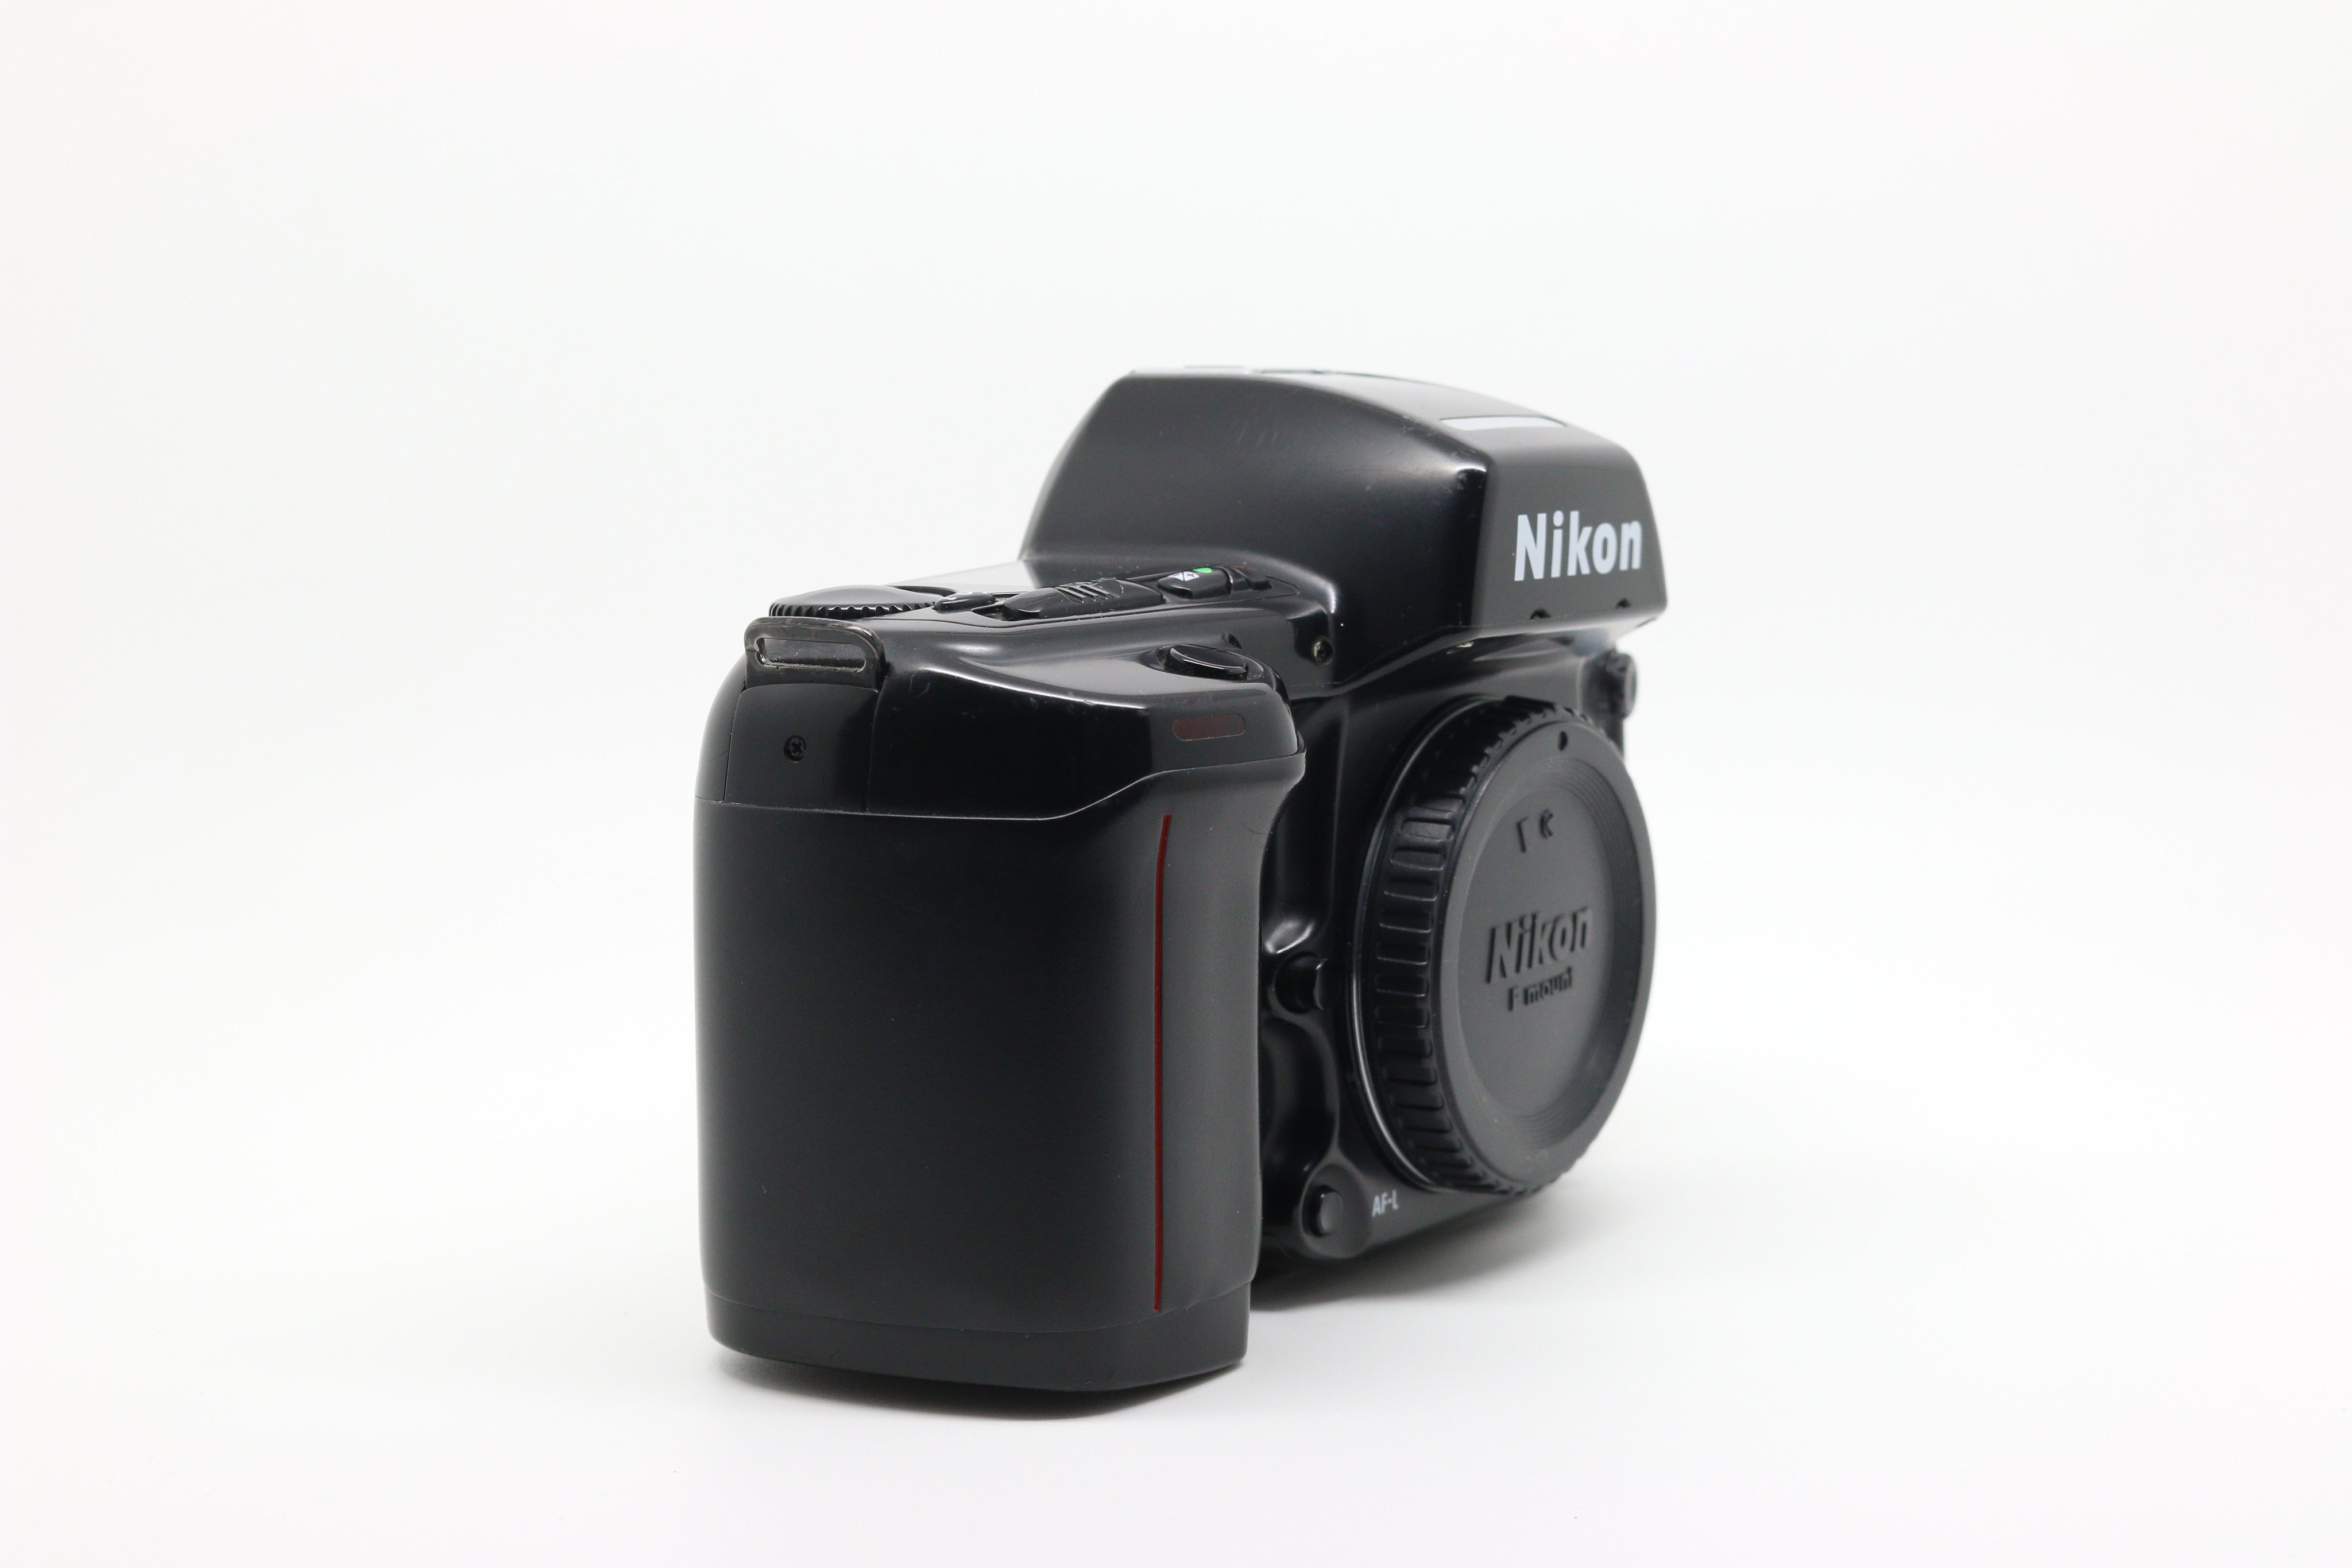 Nikon F90